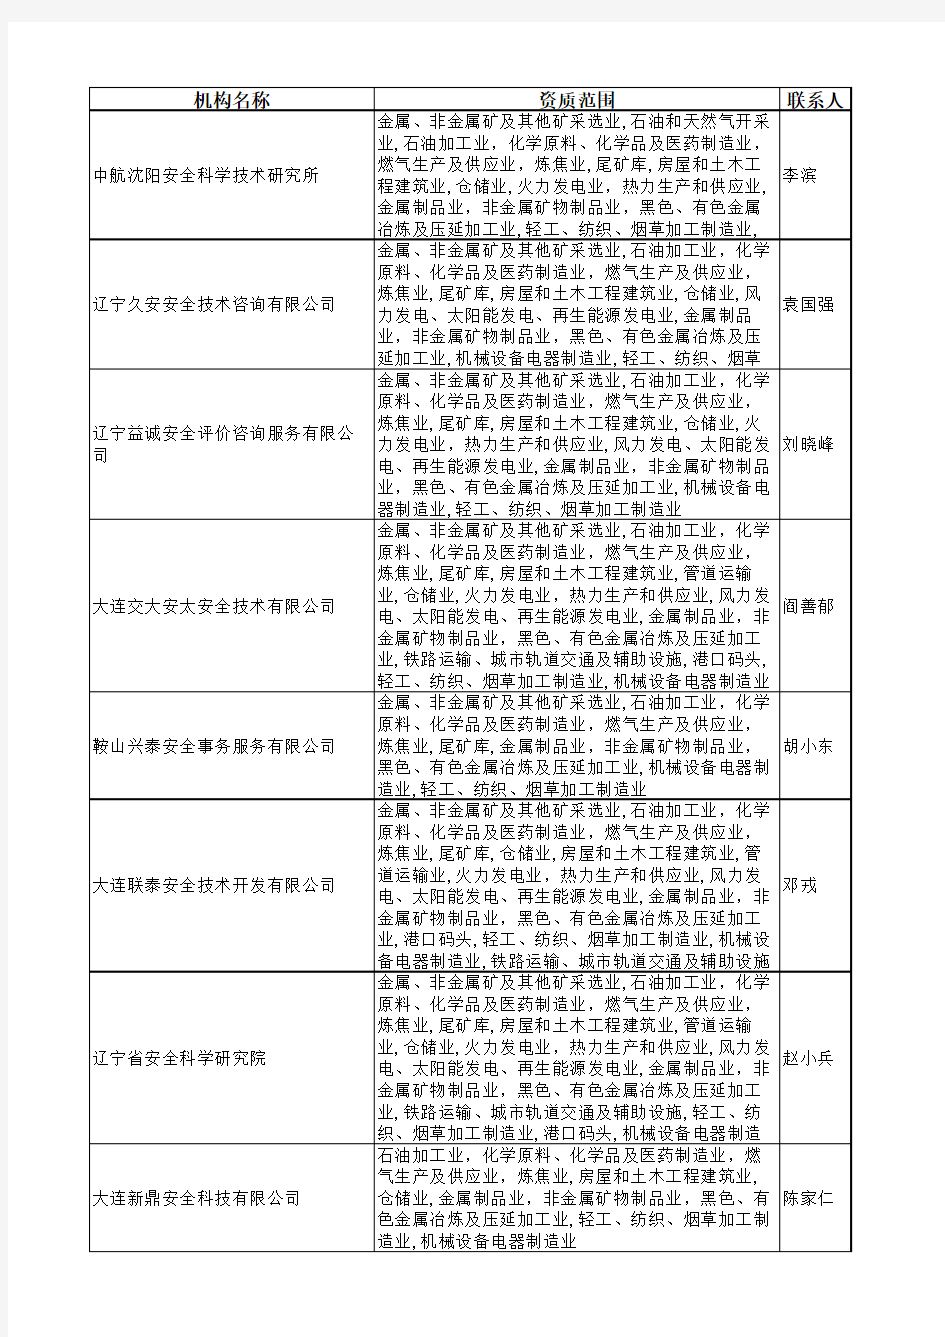 辽宁省安全评价中介机构名单